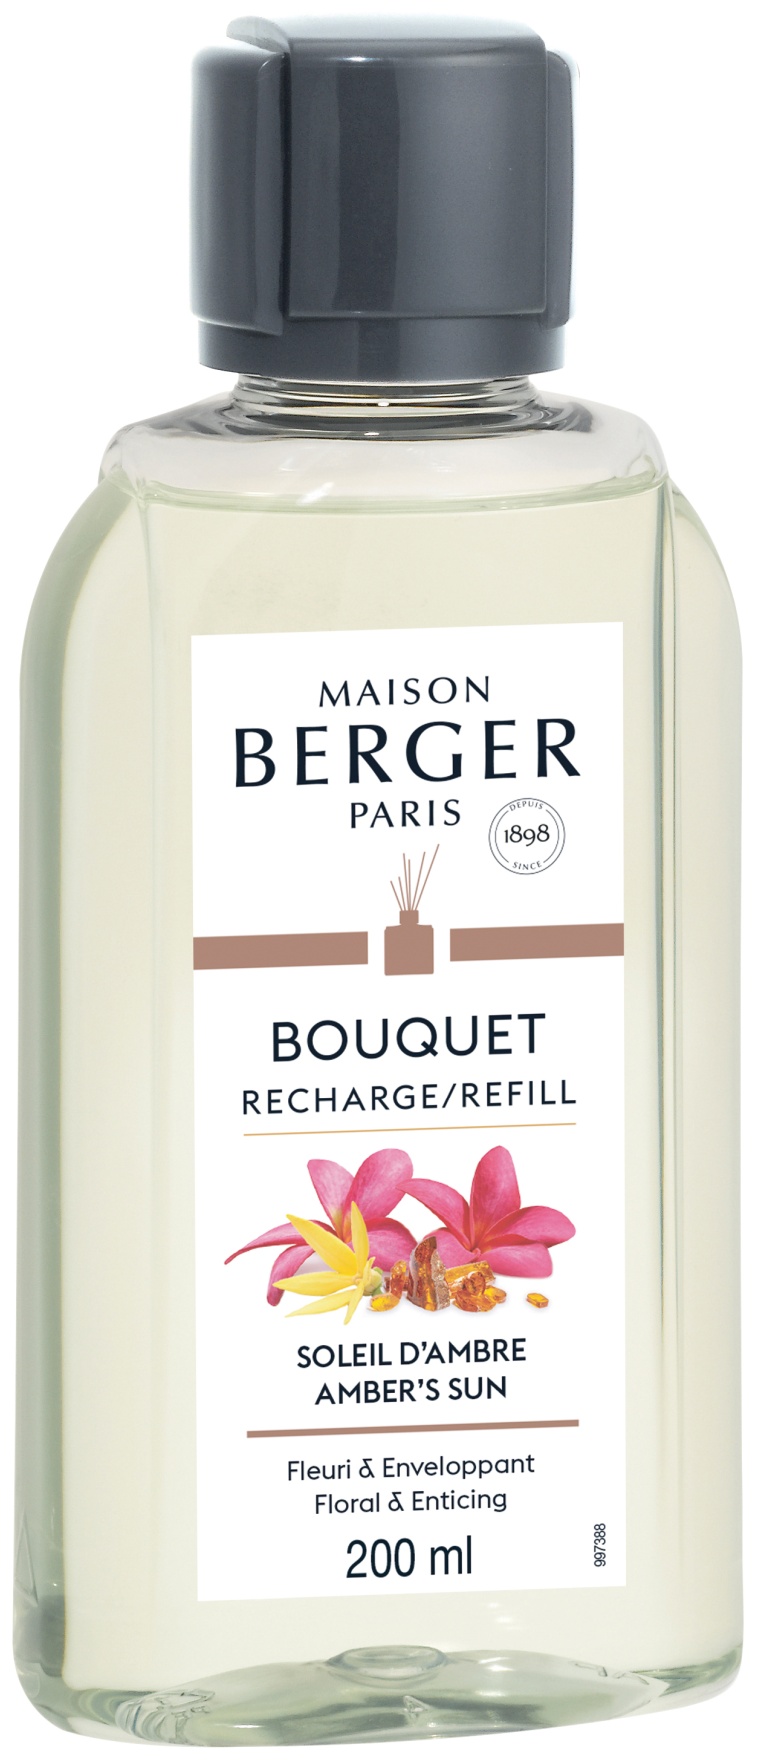 Parfum pentru difuzor Berger Soleil d’Ambre 200ml Maison Berger